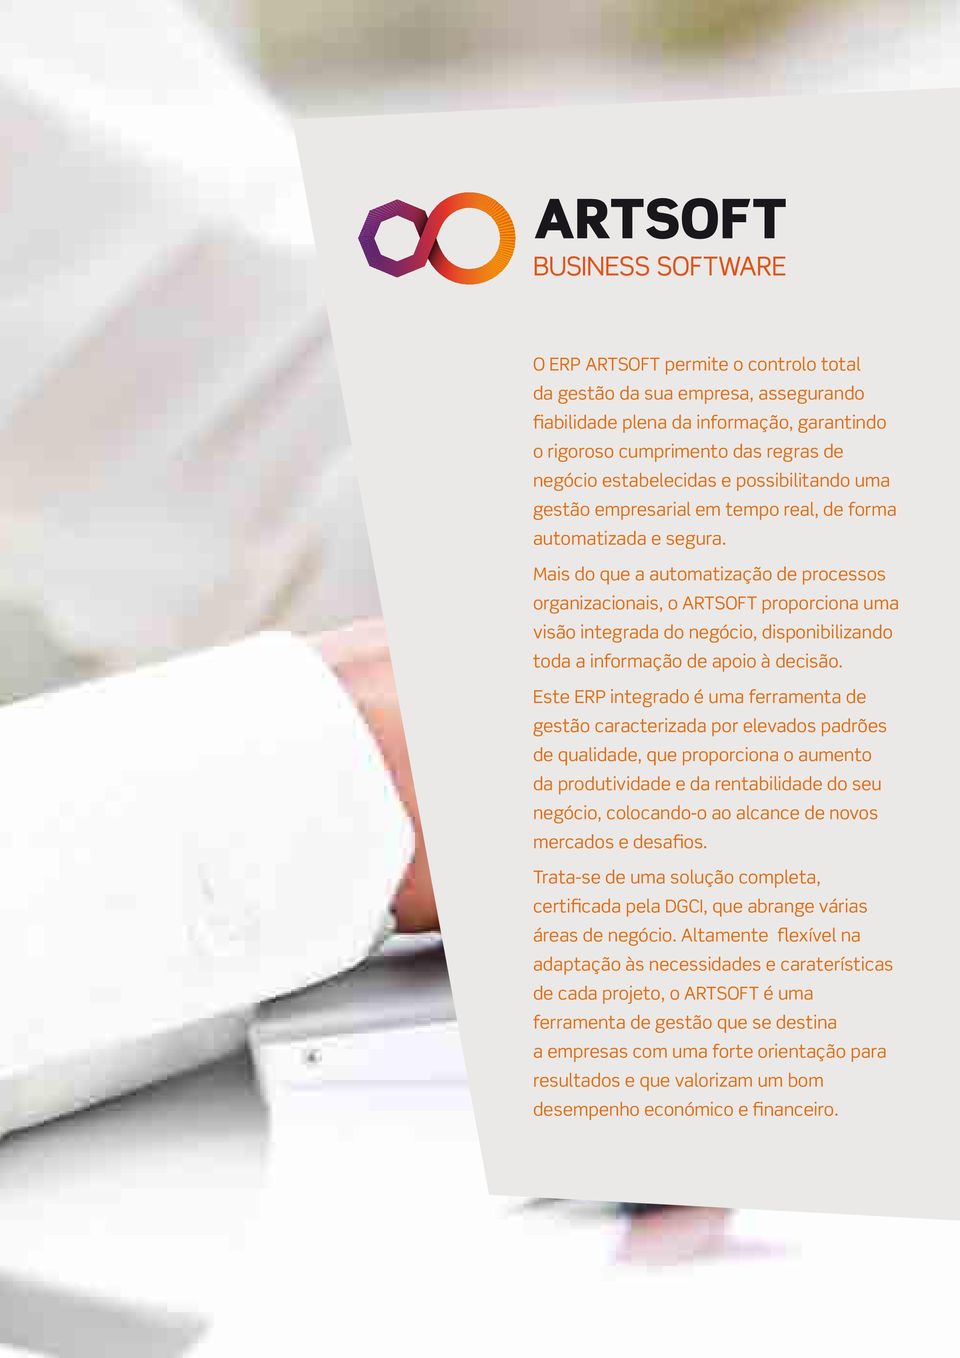 Mais do que a automatização de processos organizacionais, o ARTSOFT proporciona uma visão integrada do negócio, disponibilizando toda a informação de apoio à decisão.